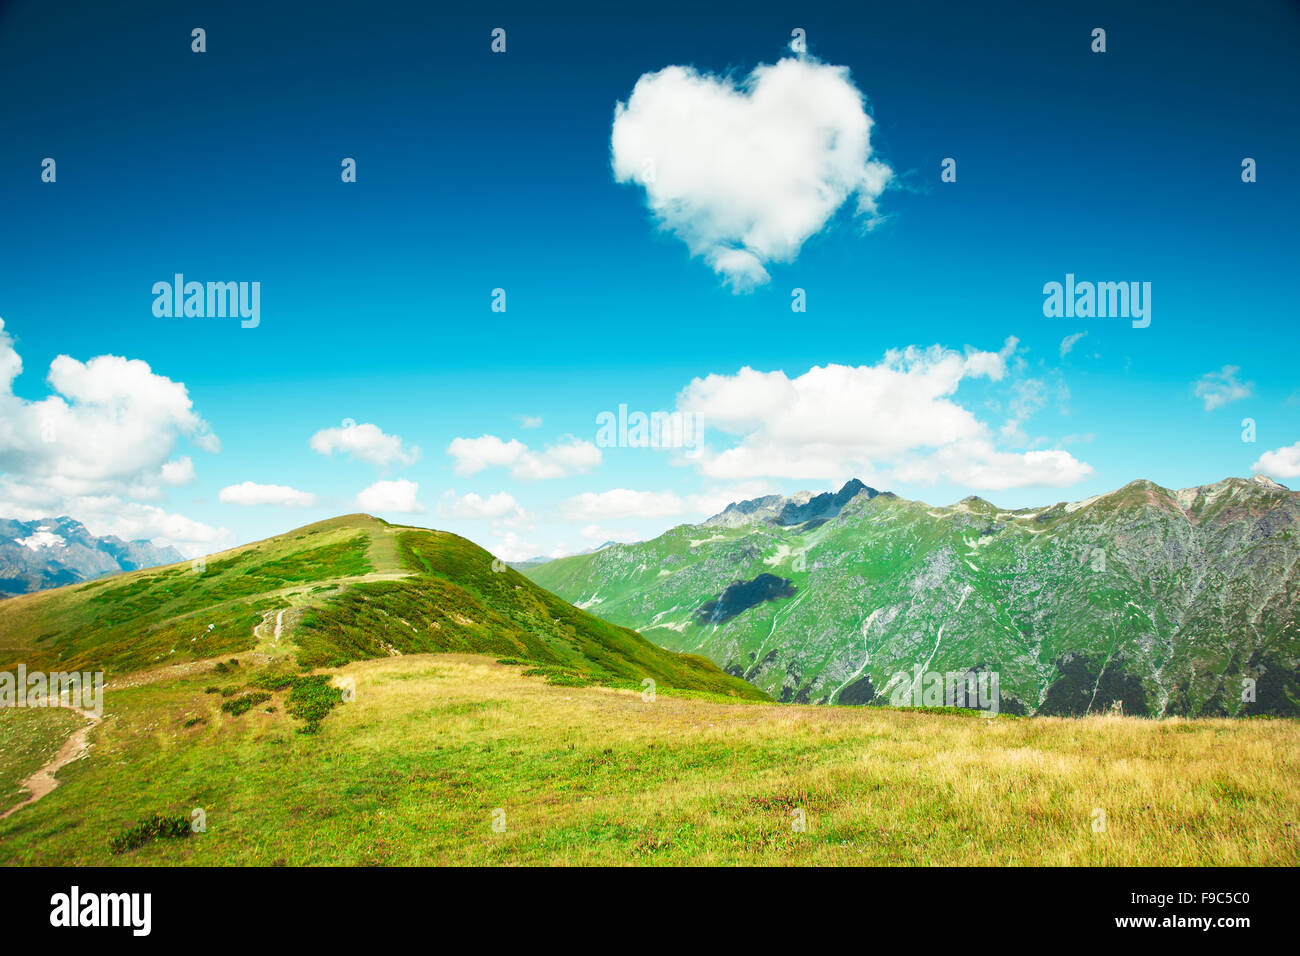 Caucasus mountains. Abkhazia. Stock Photo